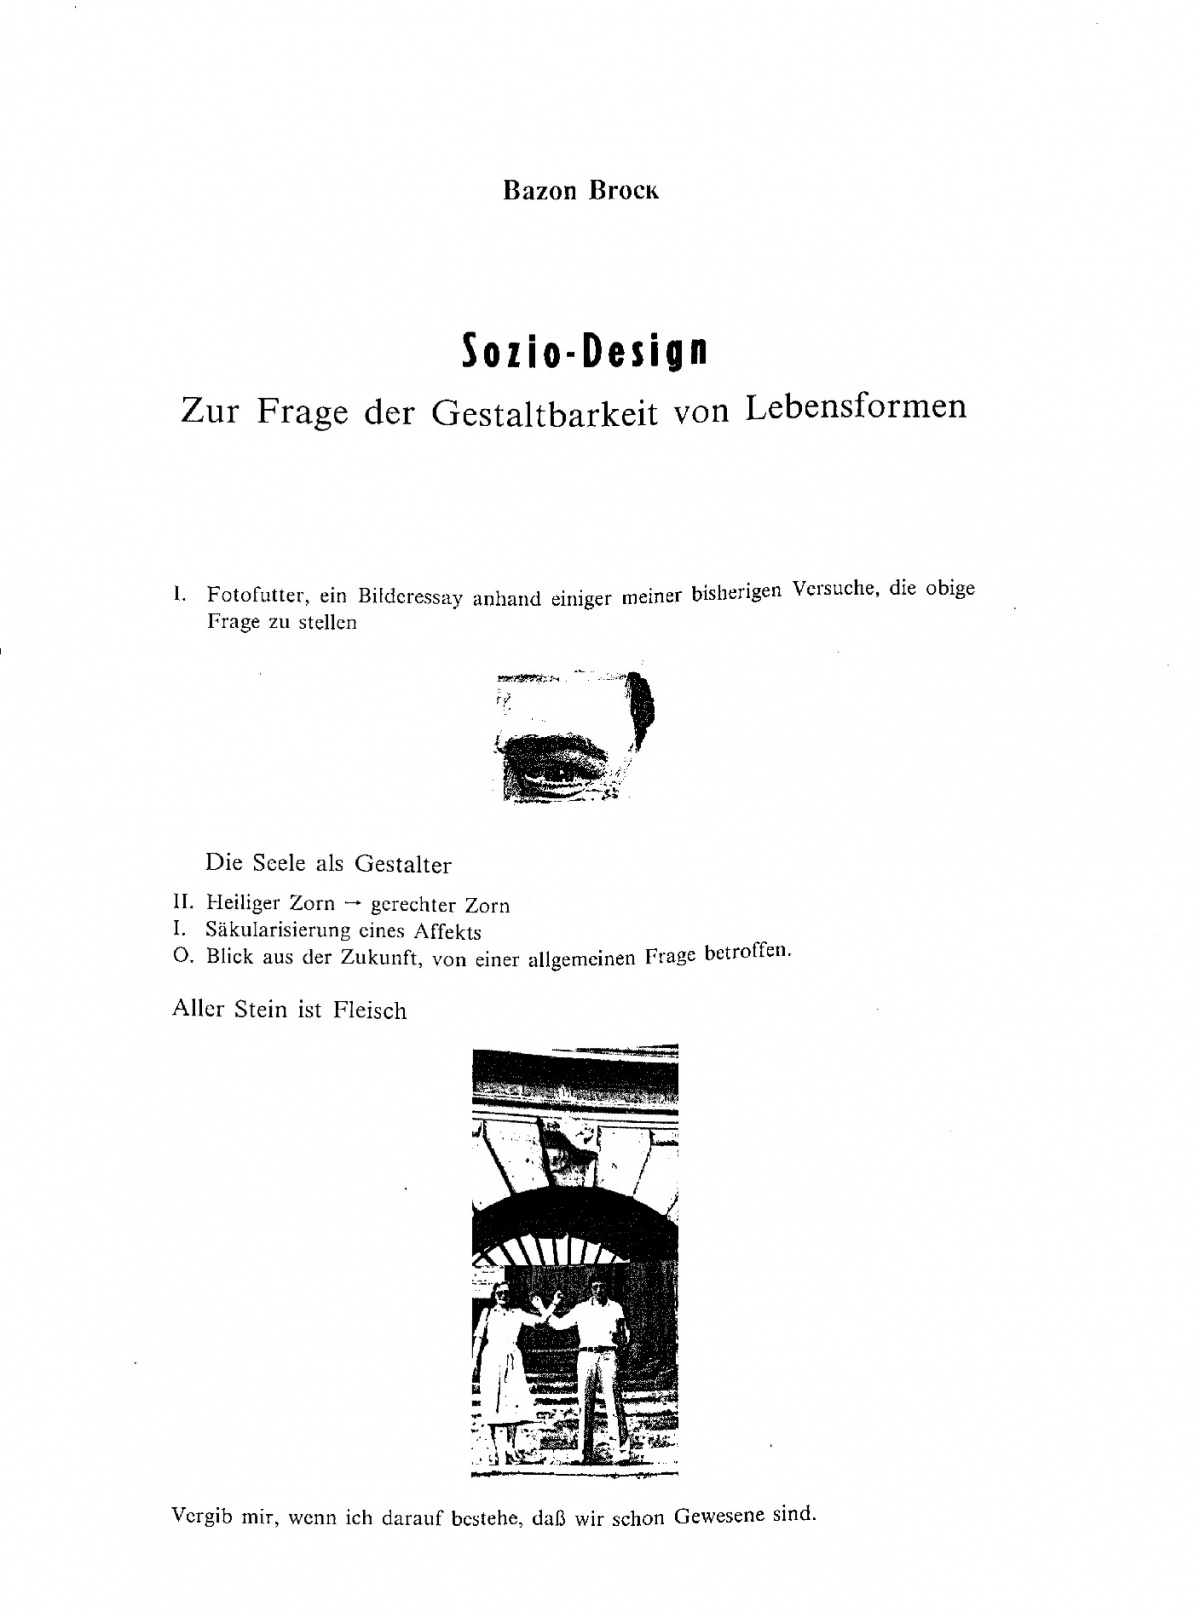 Sozio-Design (Bildessay). In: Design ist unsichtbar. Wien 1981, S. 53